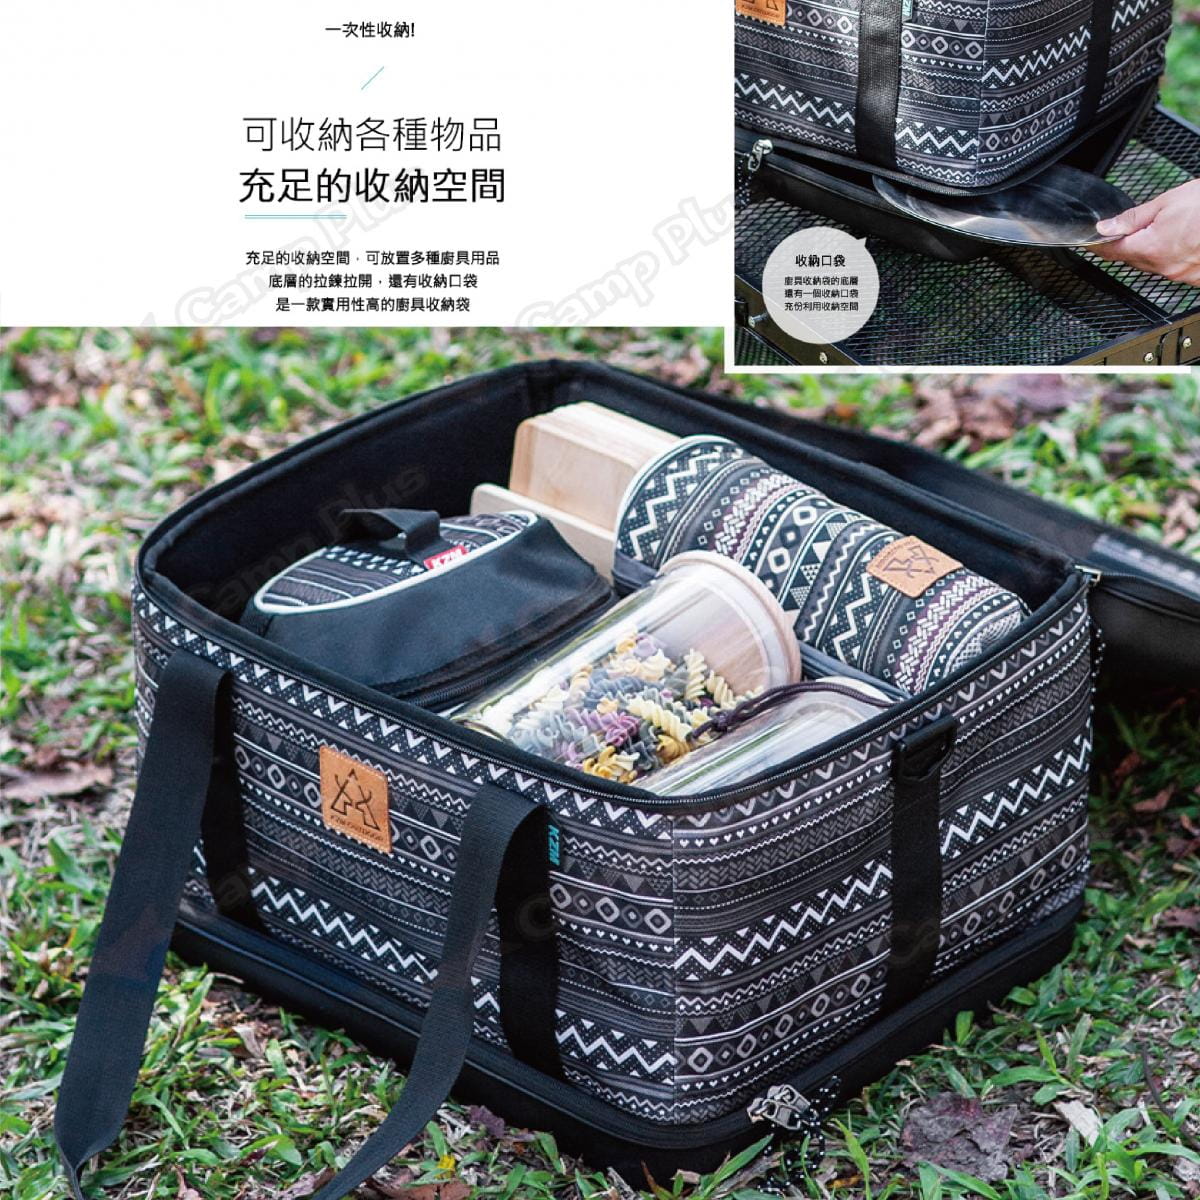 【KZM】硬殼廚具收納袋 K20T3K004 (悠遊戶外) 4